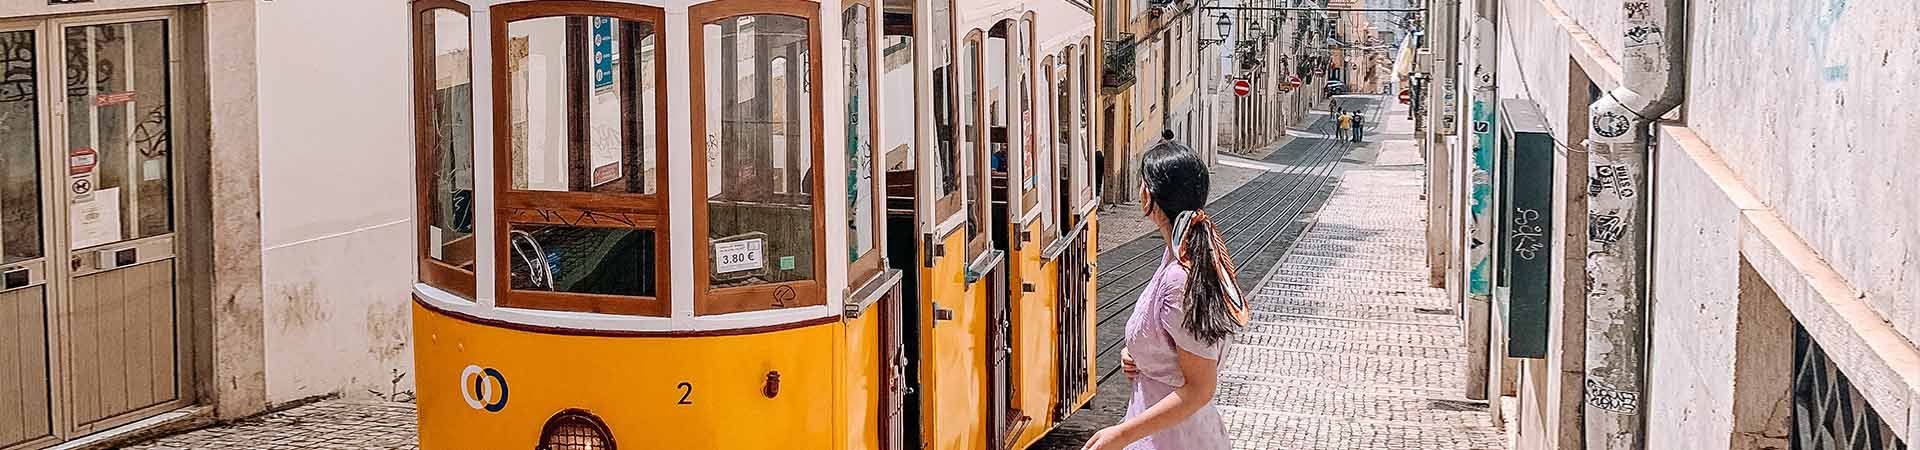 В центре изображения желто-белый лиссабонский трамвай проезжает по одной из мощеных улиц Лиссабона, застроенной зданиями со старинными фасадами. Справа от трамвая стоит брюнетка в сиреневом платье, с волосами, завязанными сзади цветным шарфом, и смотрит на трамвай.